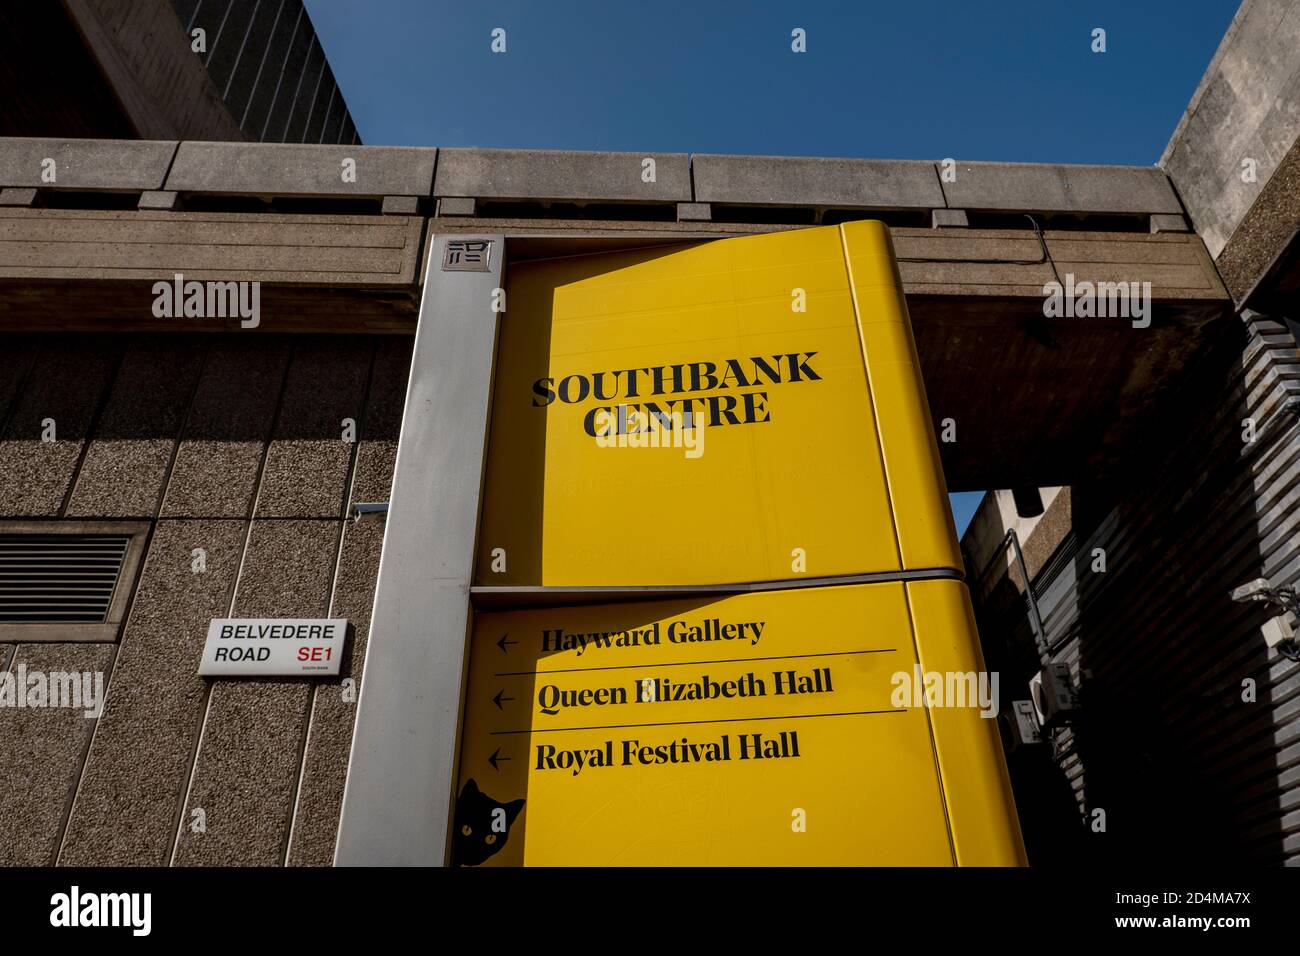 Das Southbank Centre am 17. September 2020 an der South Bank in South London im Vereinigten Königreich. Foto von Sam Mellish Stockfoto